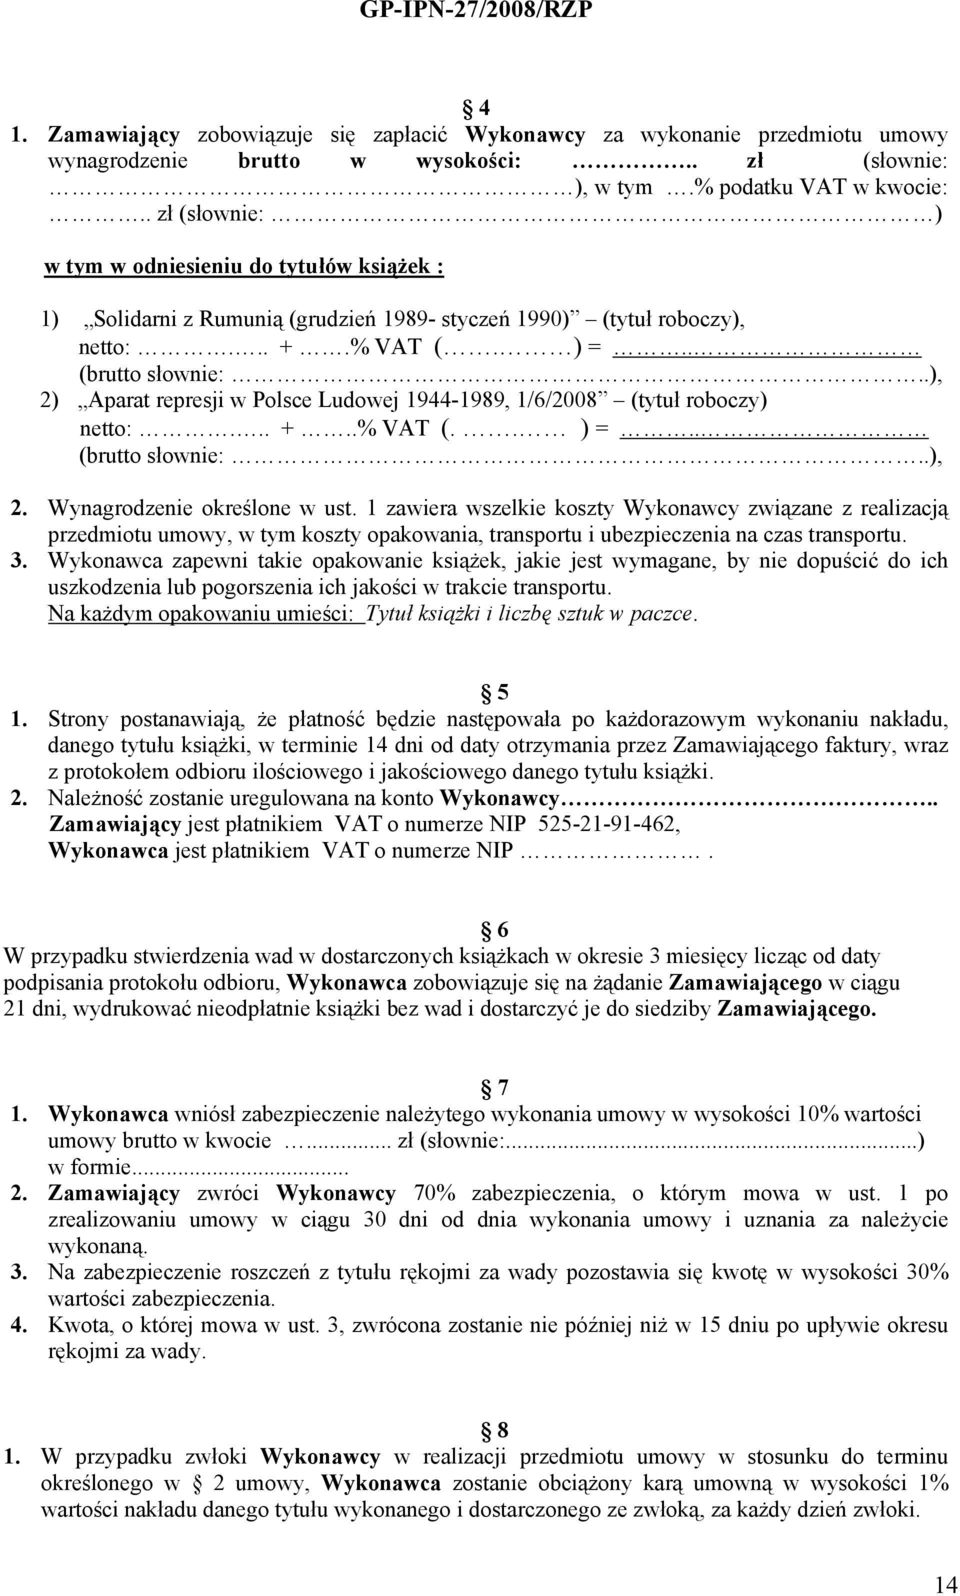 .), 2) Aparat represji w Polsce Ludowej 1944-1989, 1/6/2008 (tytuł roboczy) netto:... +..% VAT (.. ) =.. (brutto słownie:..), 2. Wynagrodzenie określone w ust.